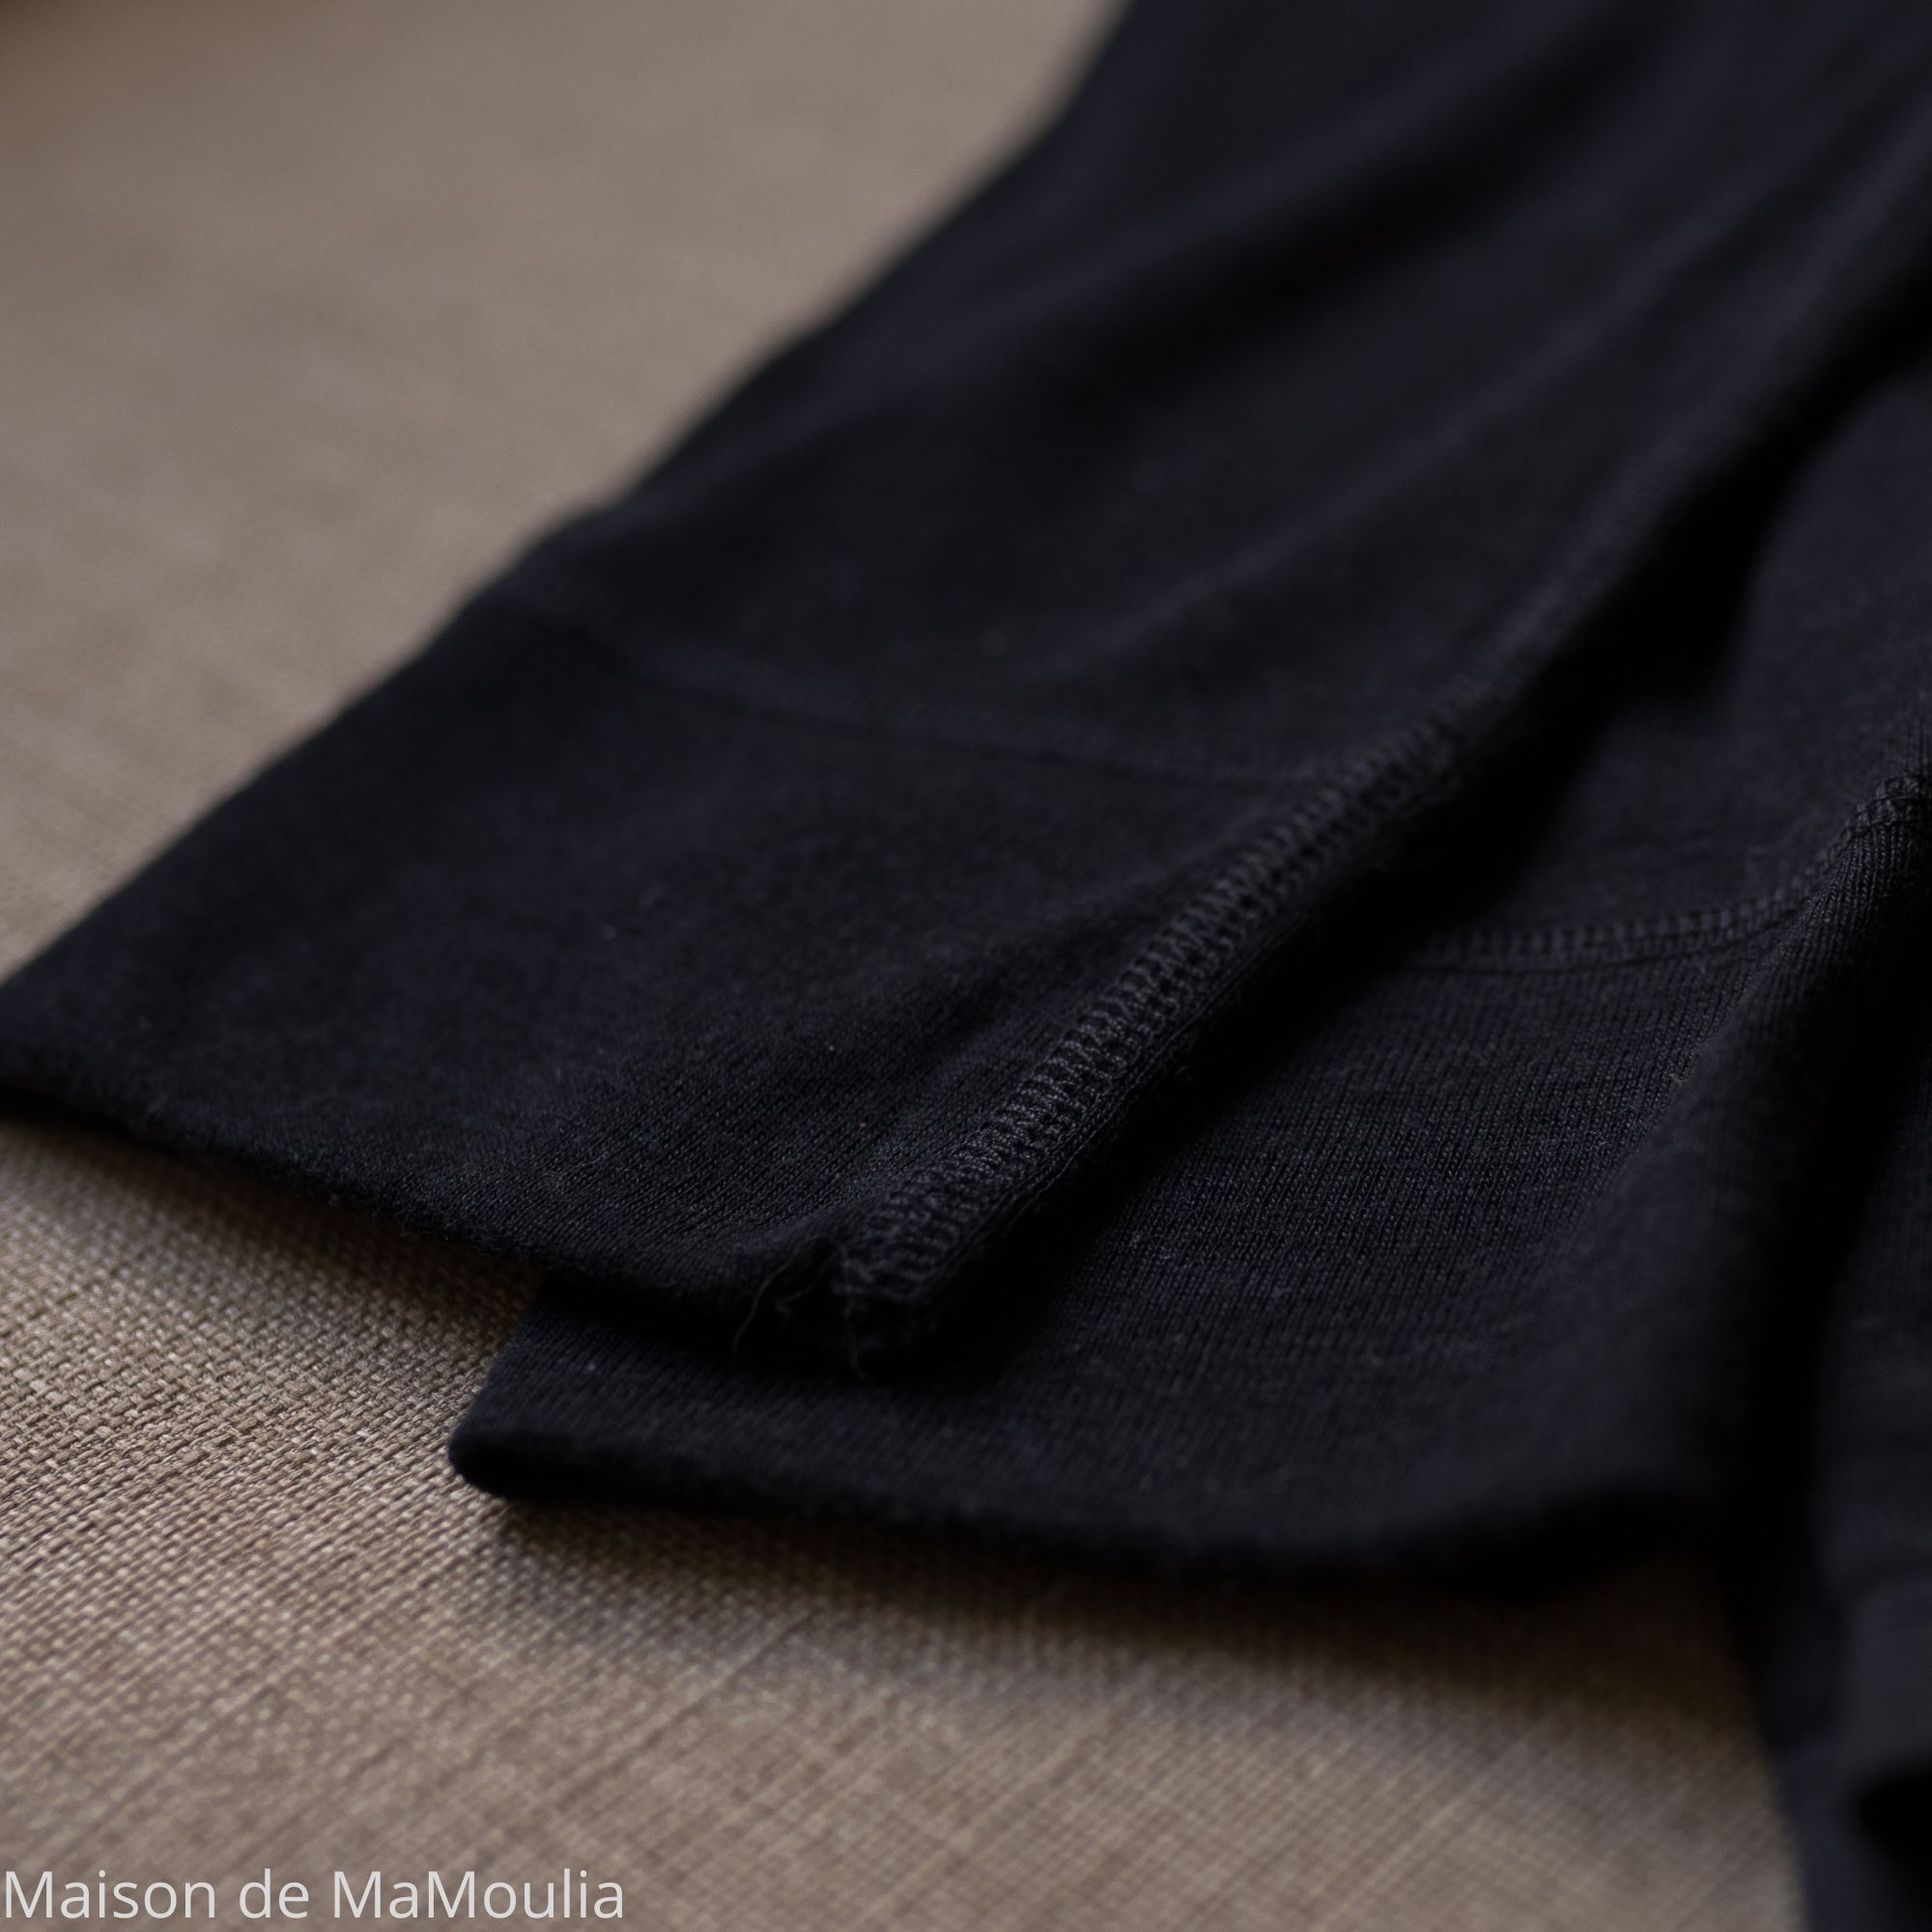 legging-caleçon-sous-vetement-thermoregulateur-cosilana-laine-soie-femme-maison-de-mamoulia-noir-